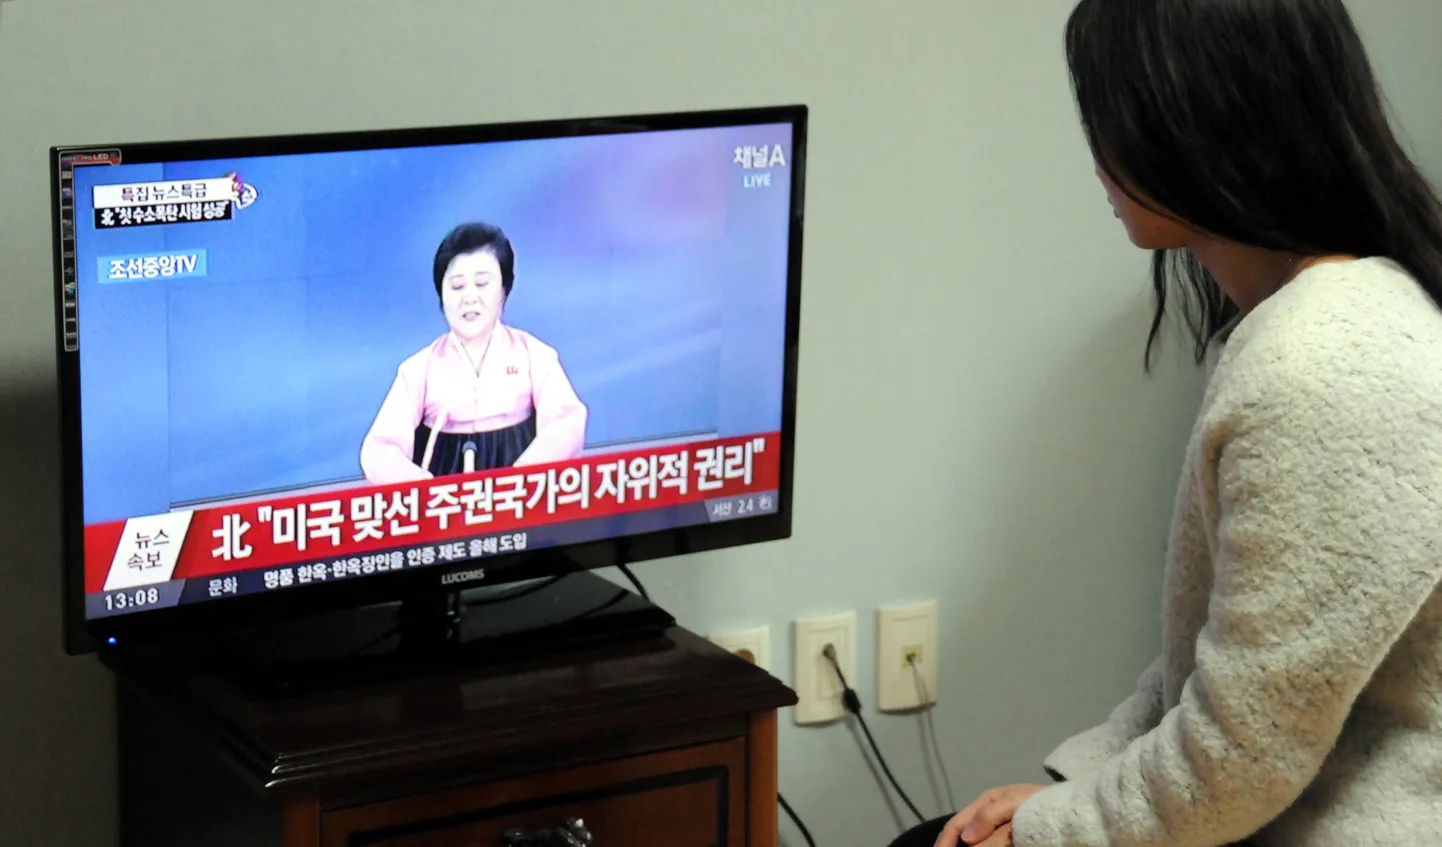 Сеул назвал объявление КНДР о первом успешном испытании водородной бомбы провокационным и идущим вразрез с резолюциями Совбеза ООН.